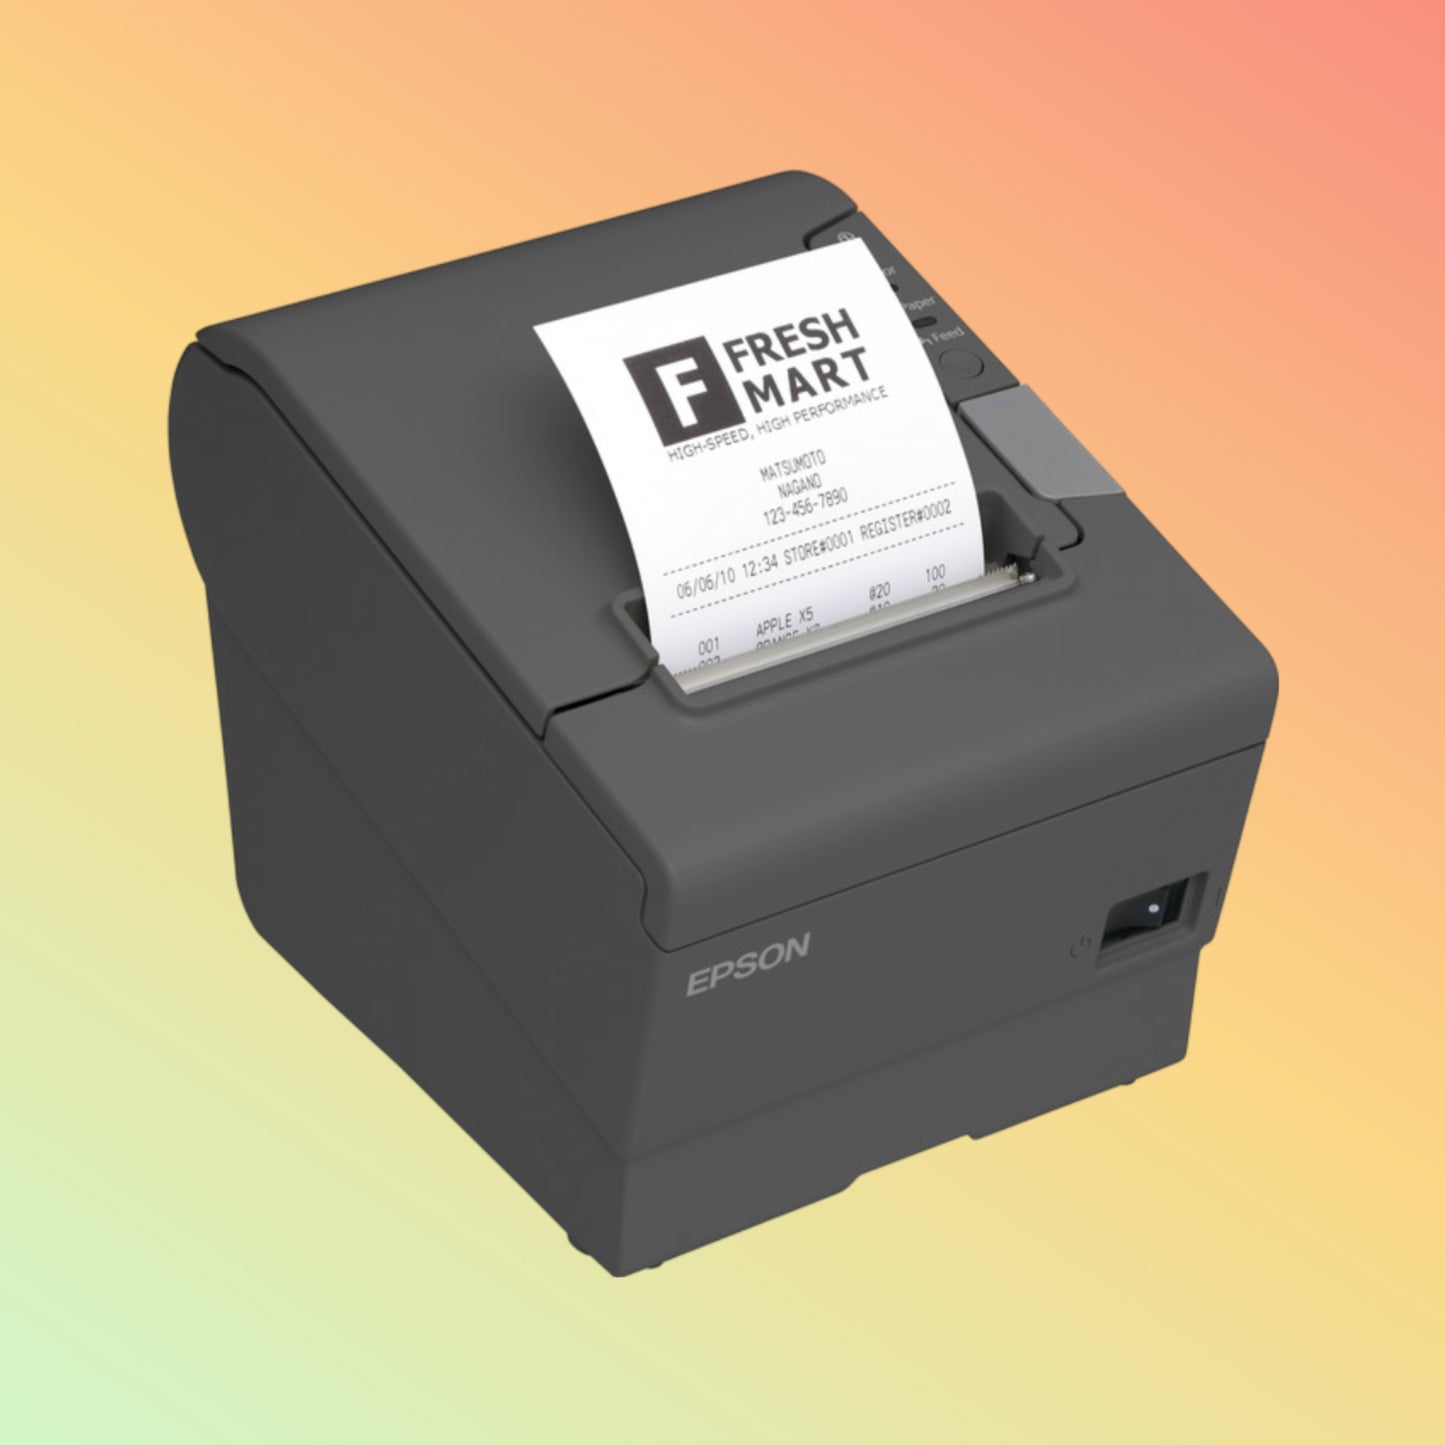 Epson TM-T88IV Thermal Receipt Printer